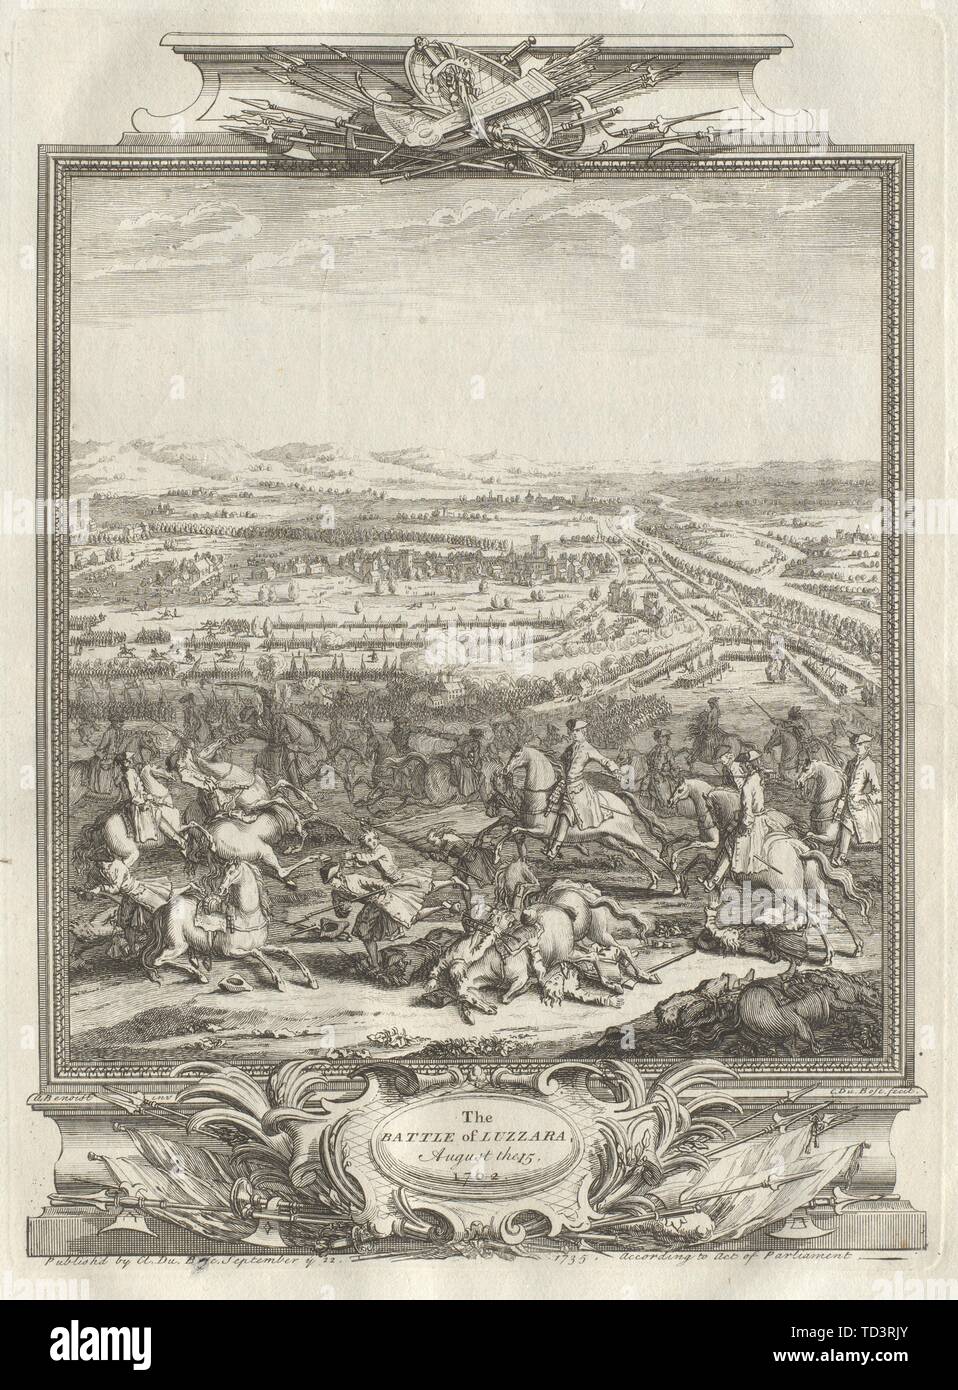 La Battaglia di Luzzara Agosto 15, 1702. Reggio Emilia, Italia 1736 antica stampa Foto Stock